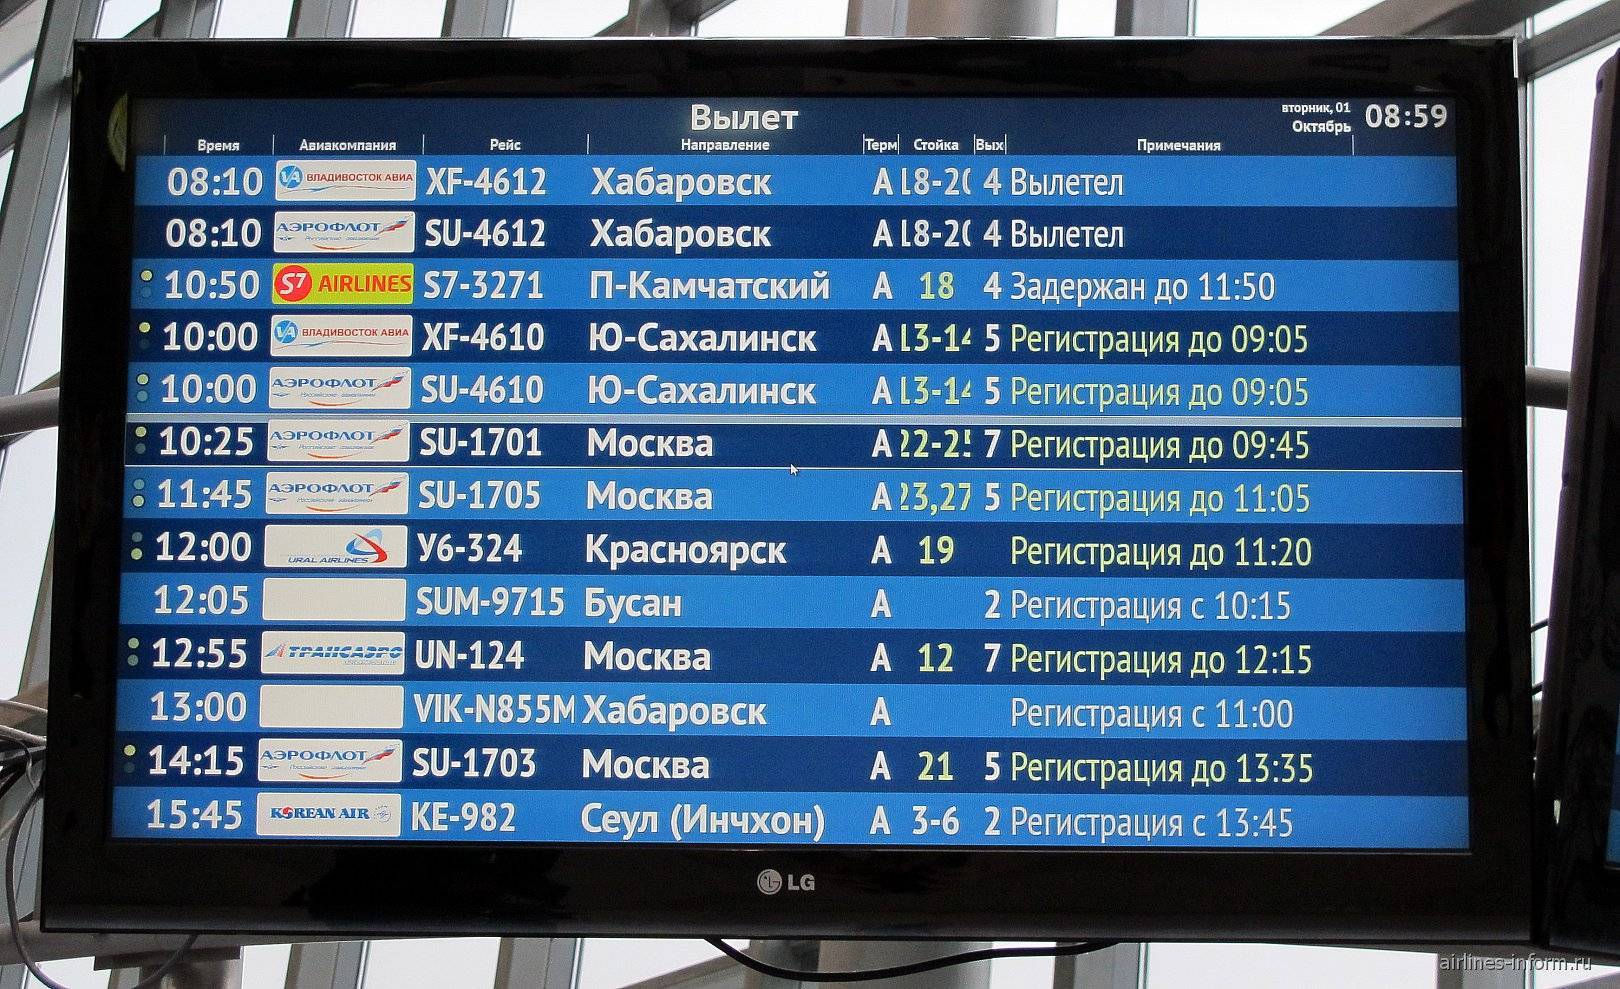 Какое время указывается в авиабилетах: местное или московское?